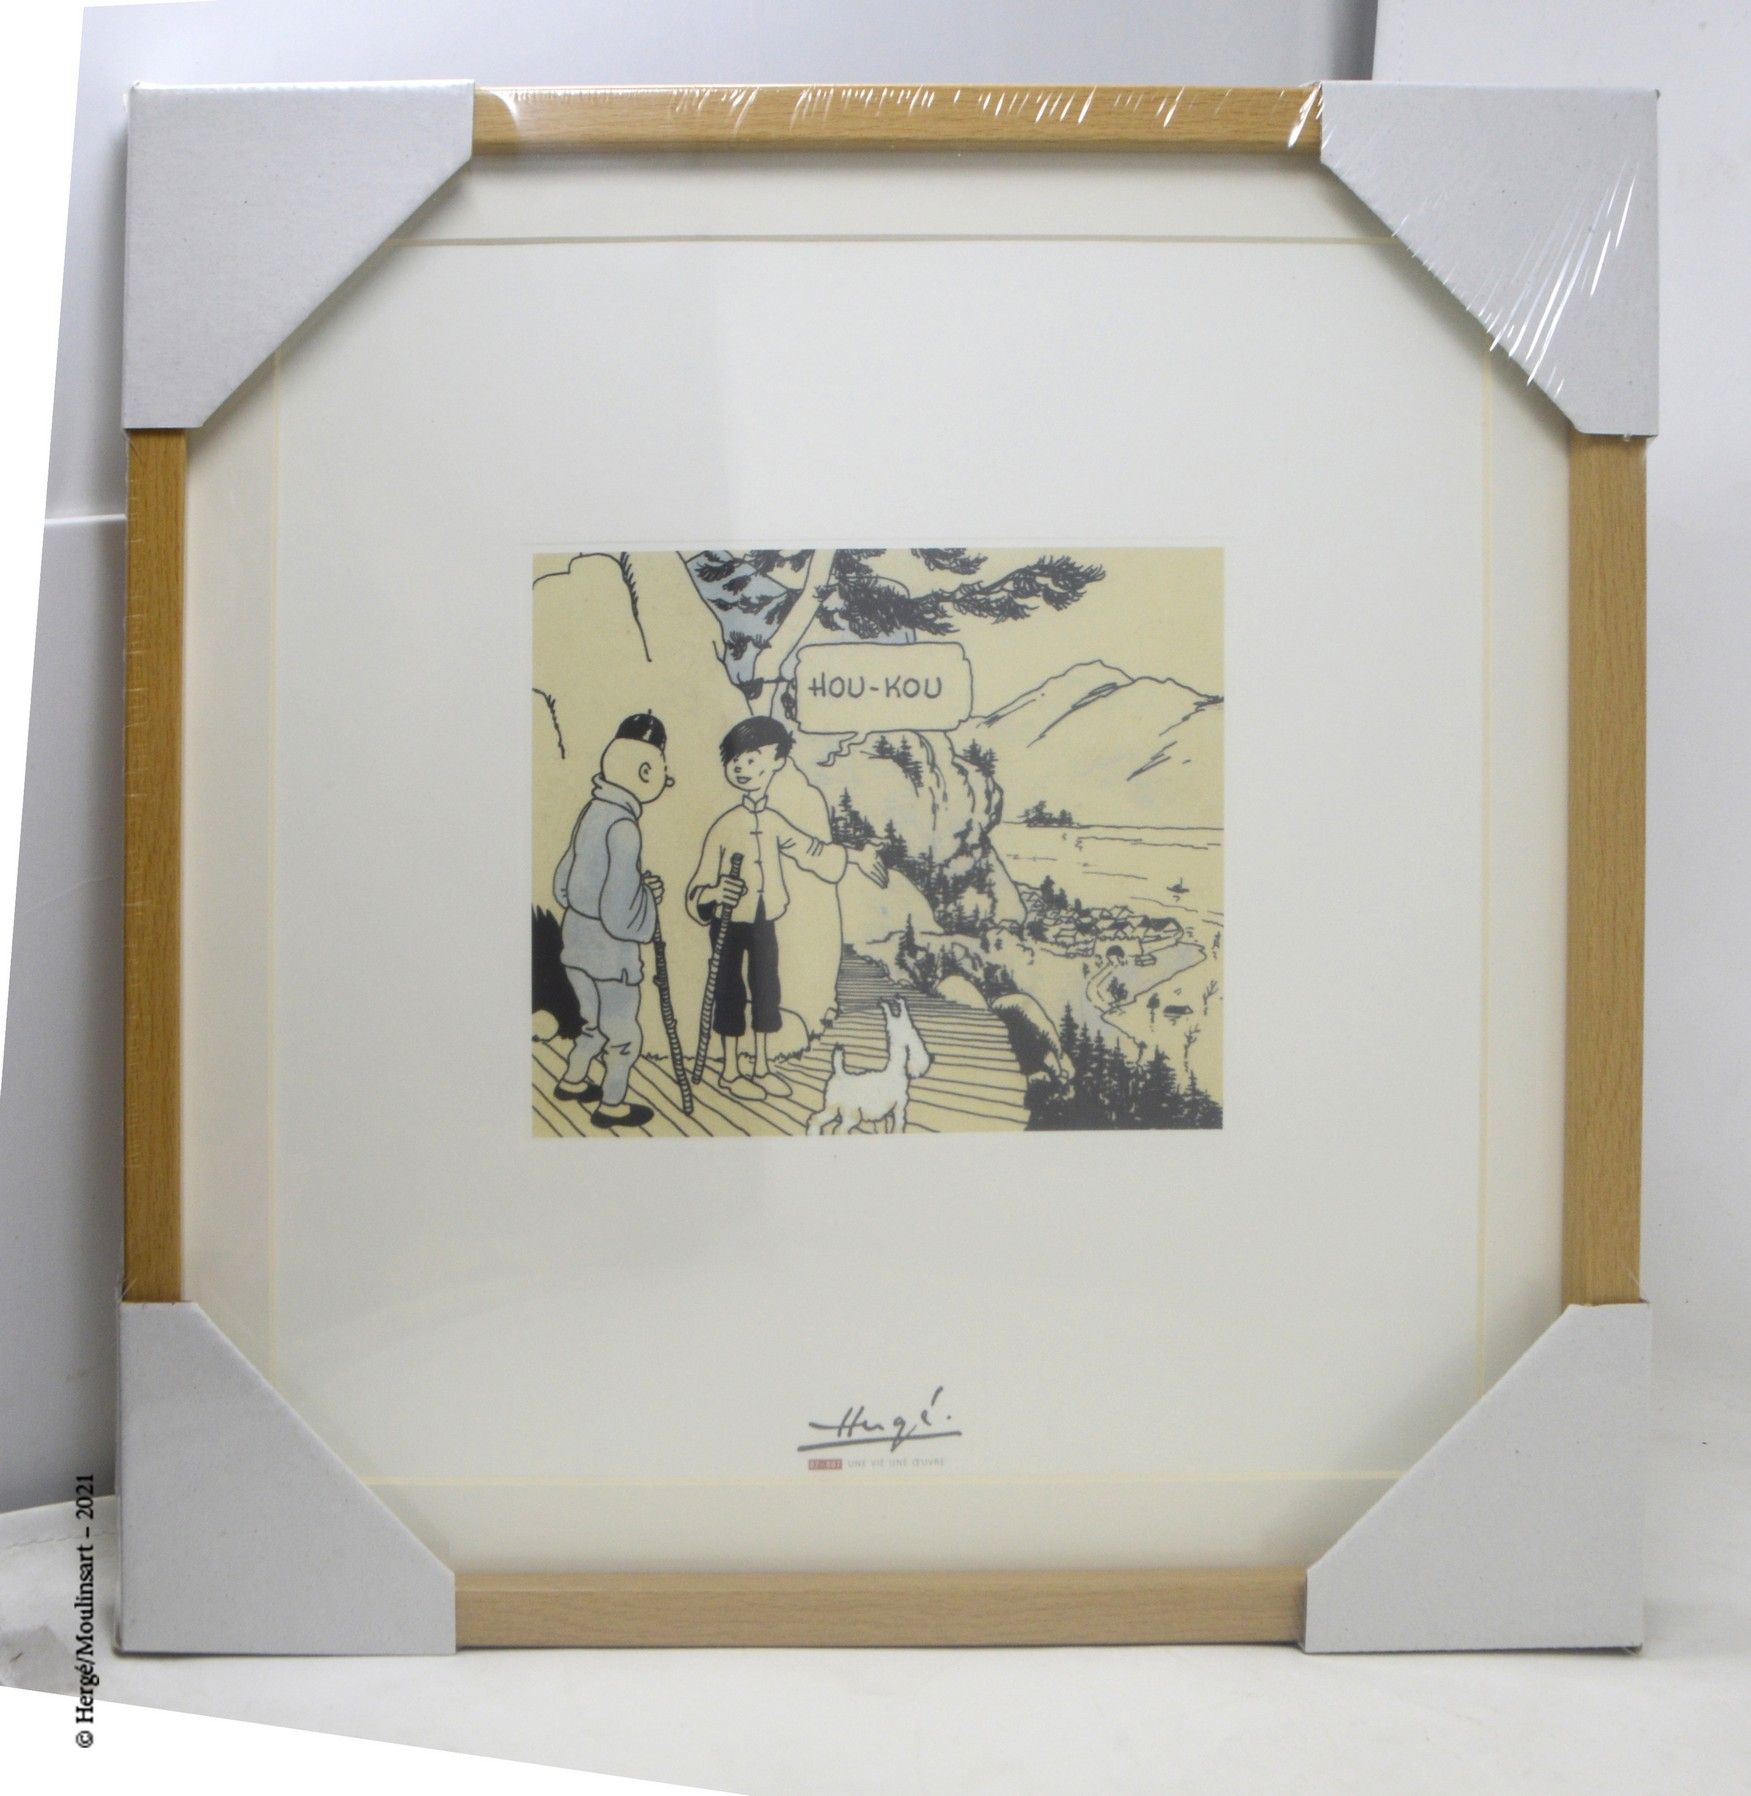 LE LOTUS BLEU HERGÉ/MOULINSART

Lithographie Moulinsart : Hergé, ein Leben, ein &hellip;